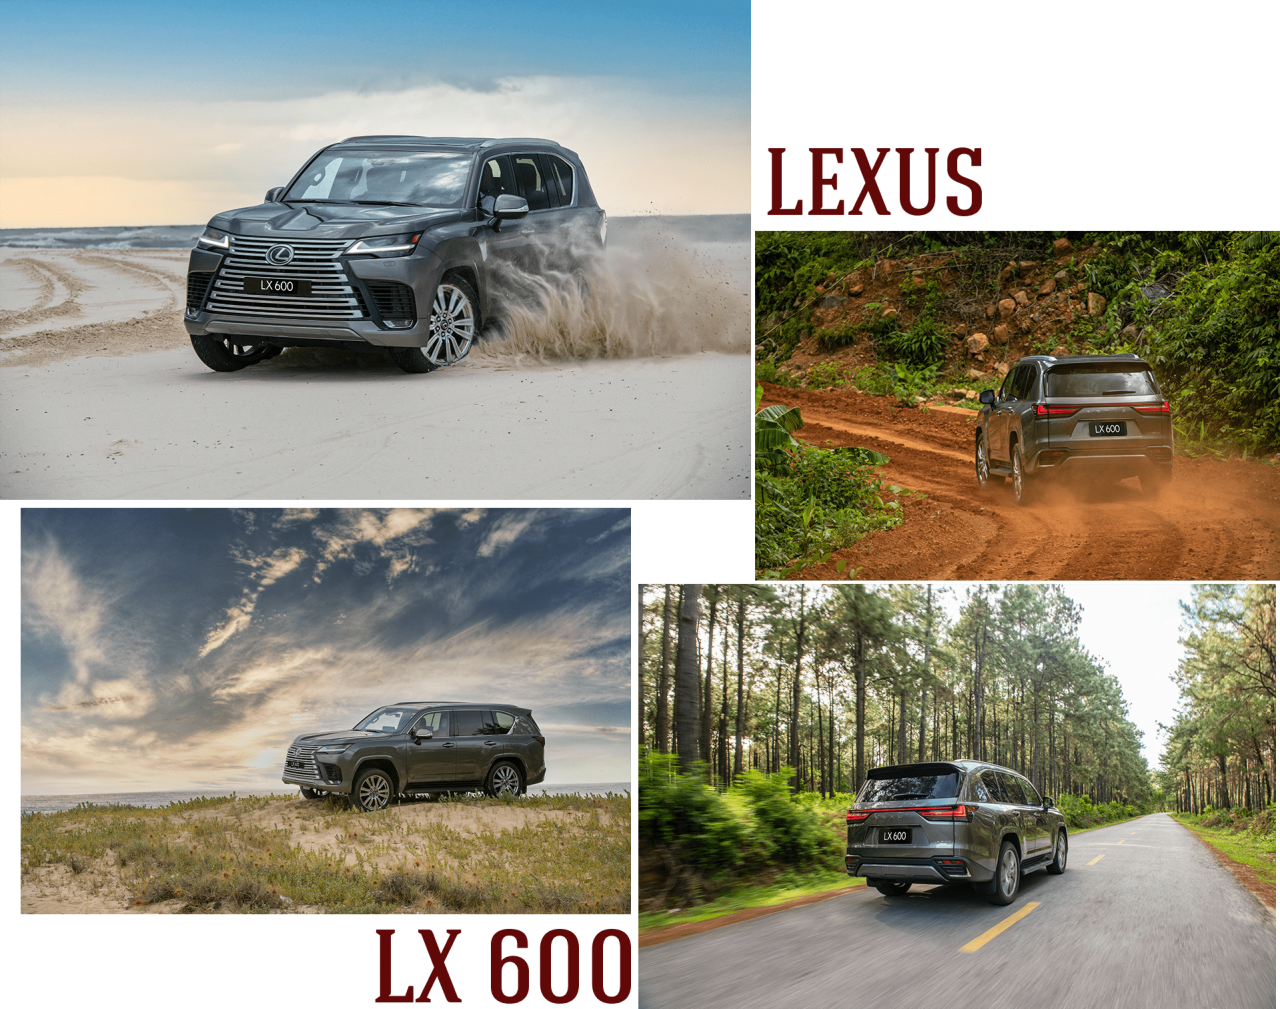 Khám phá các công nghệ an toàn trên Lexus LX 600